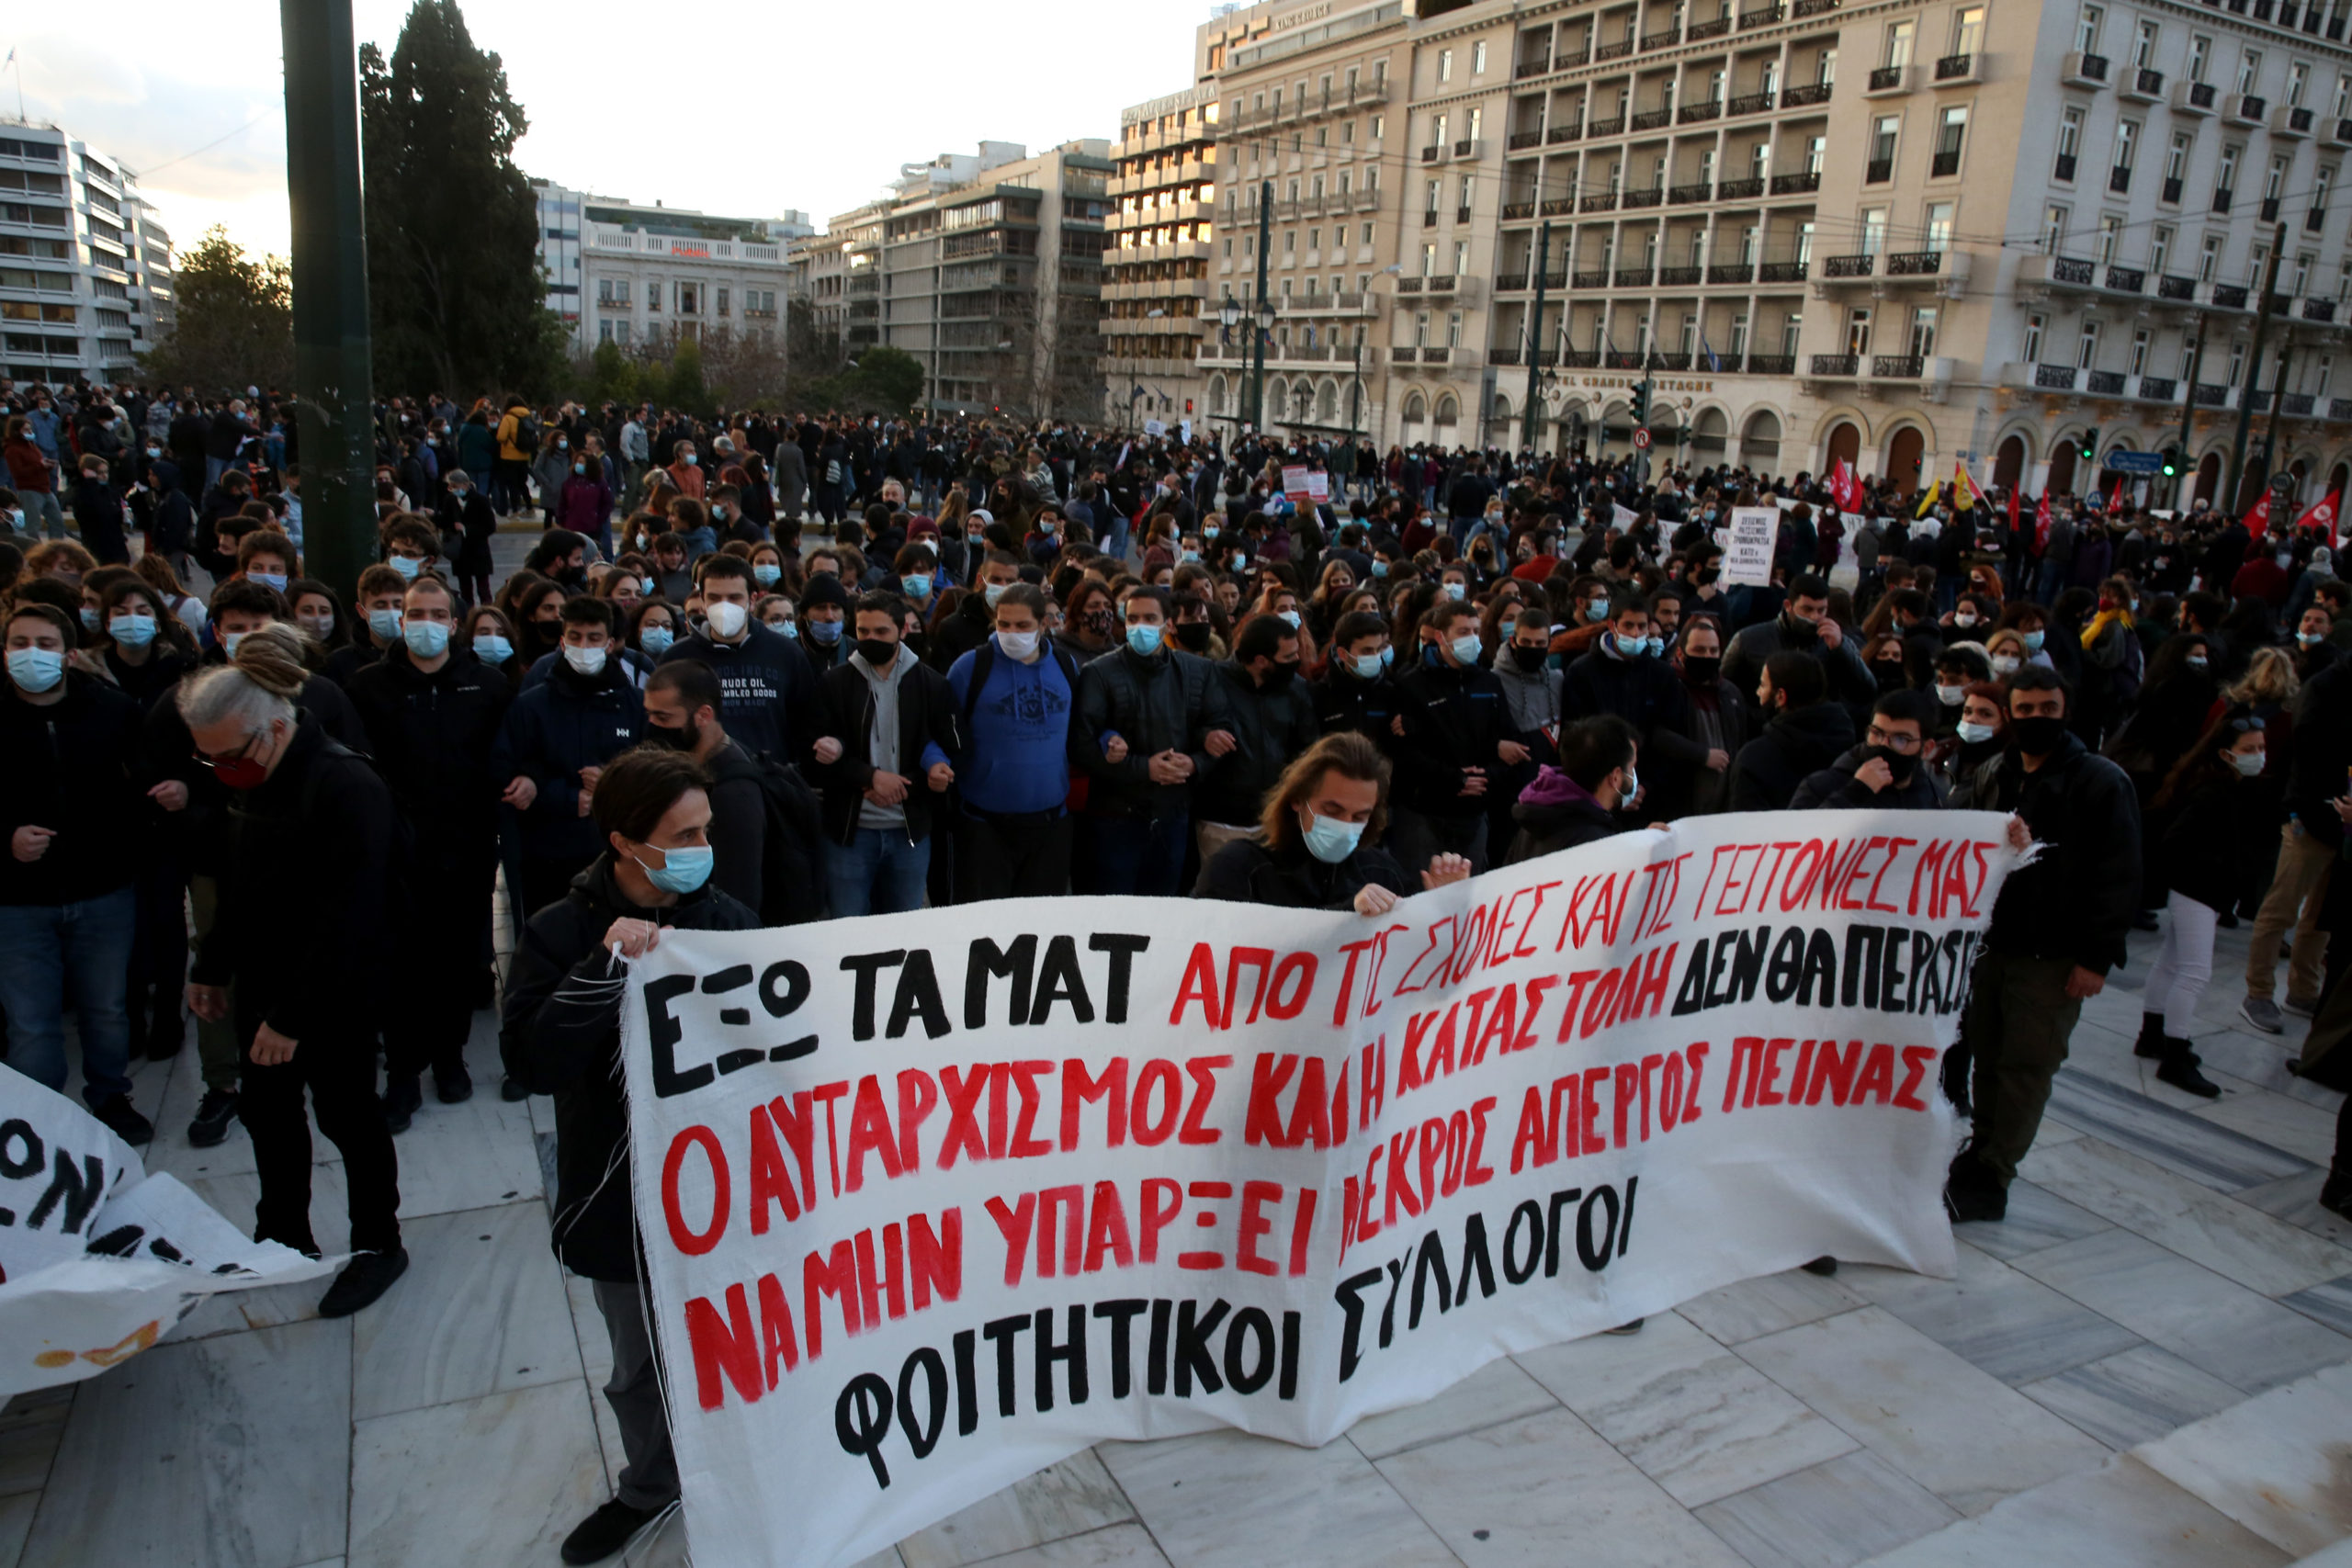 Συγκέντρωση στο Σύνταγμα για τα δημοκρατικά δικαιώματα - Γραμματέας νεολαίας ΣΥΡΙΖΑ: Θα είμαστε κάθε ημέρα στον δρόμο